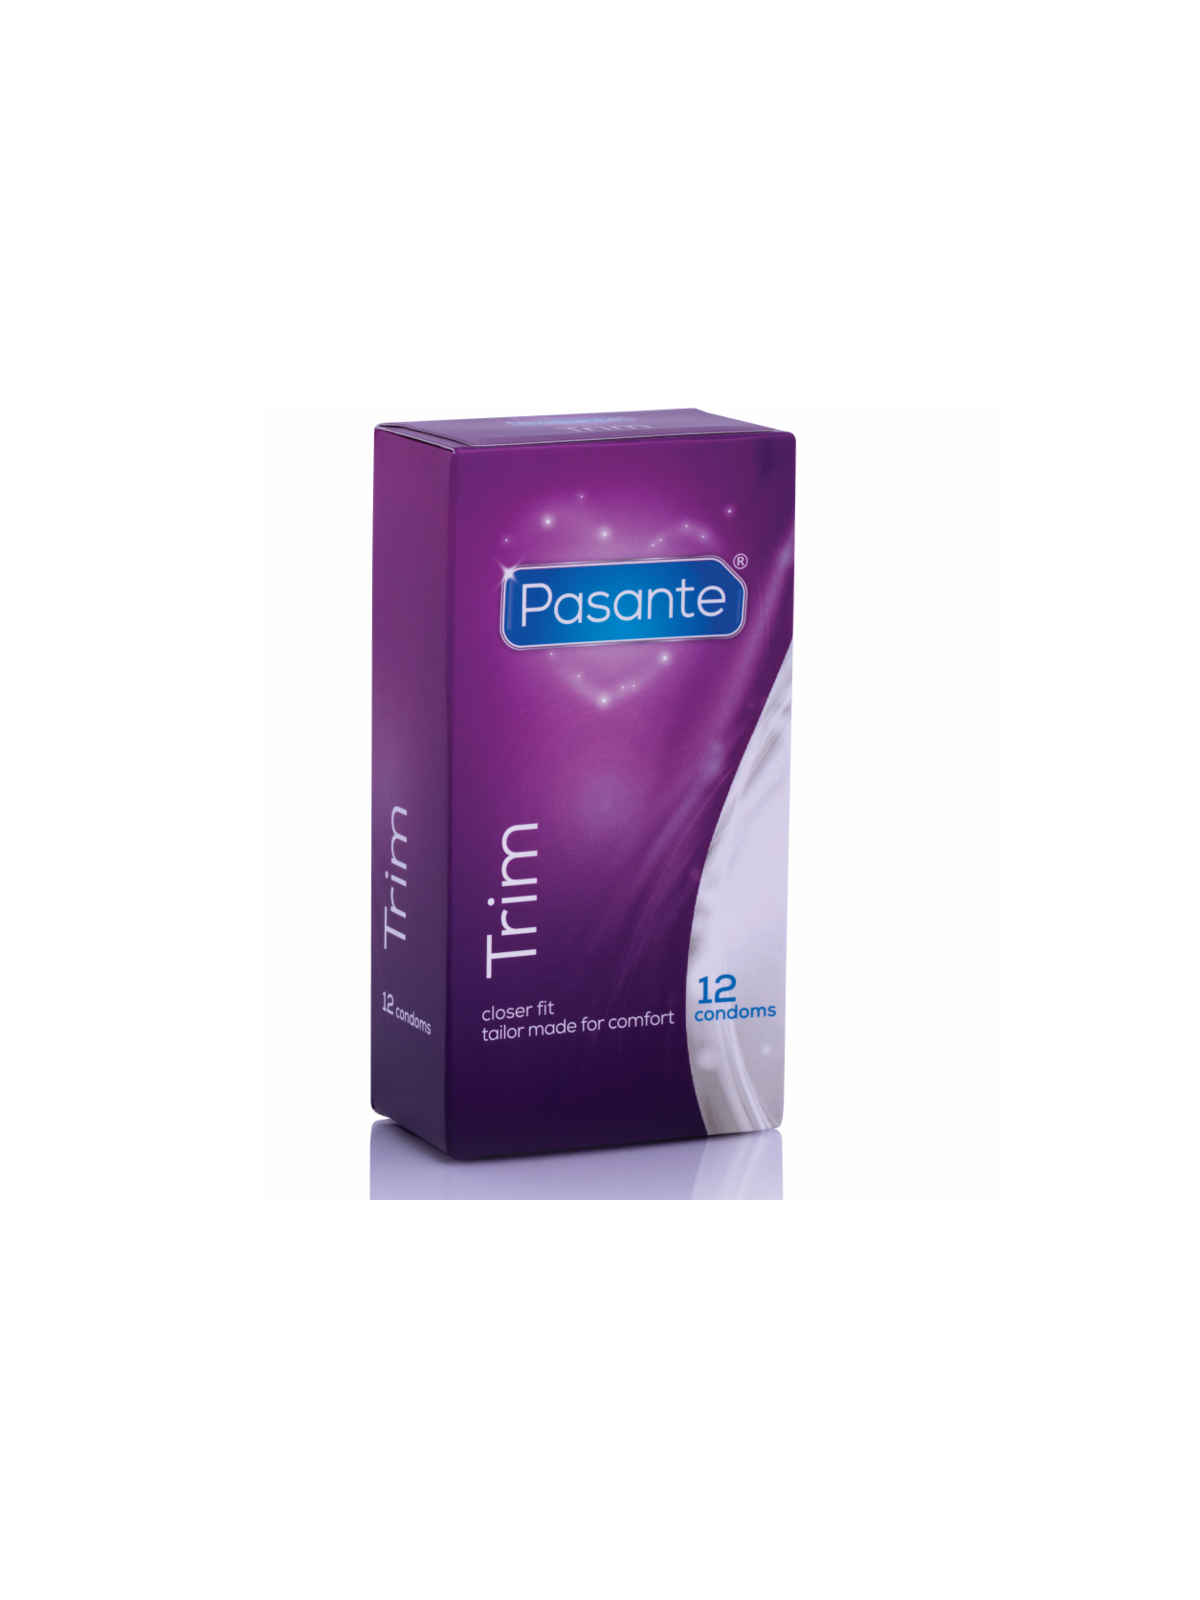 Pasante Preservativos Trim Más Delgado - Comprar Condones extra finos Pasante - Preservativos extra finos (1)